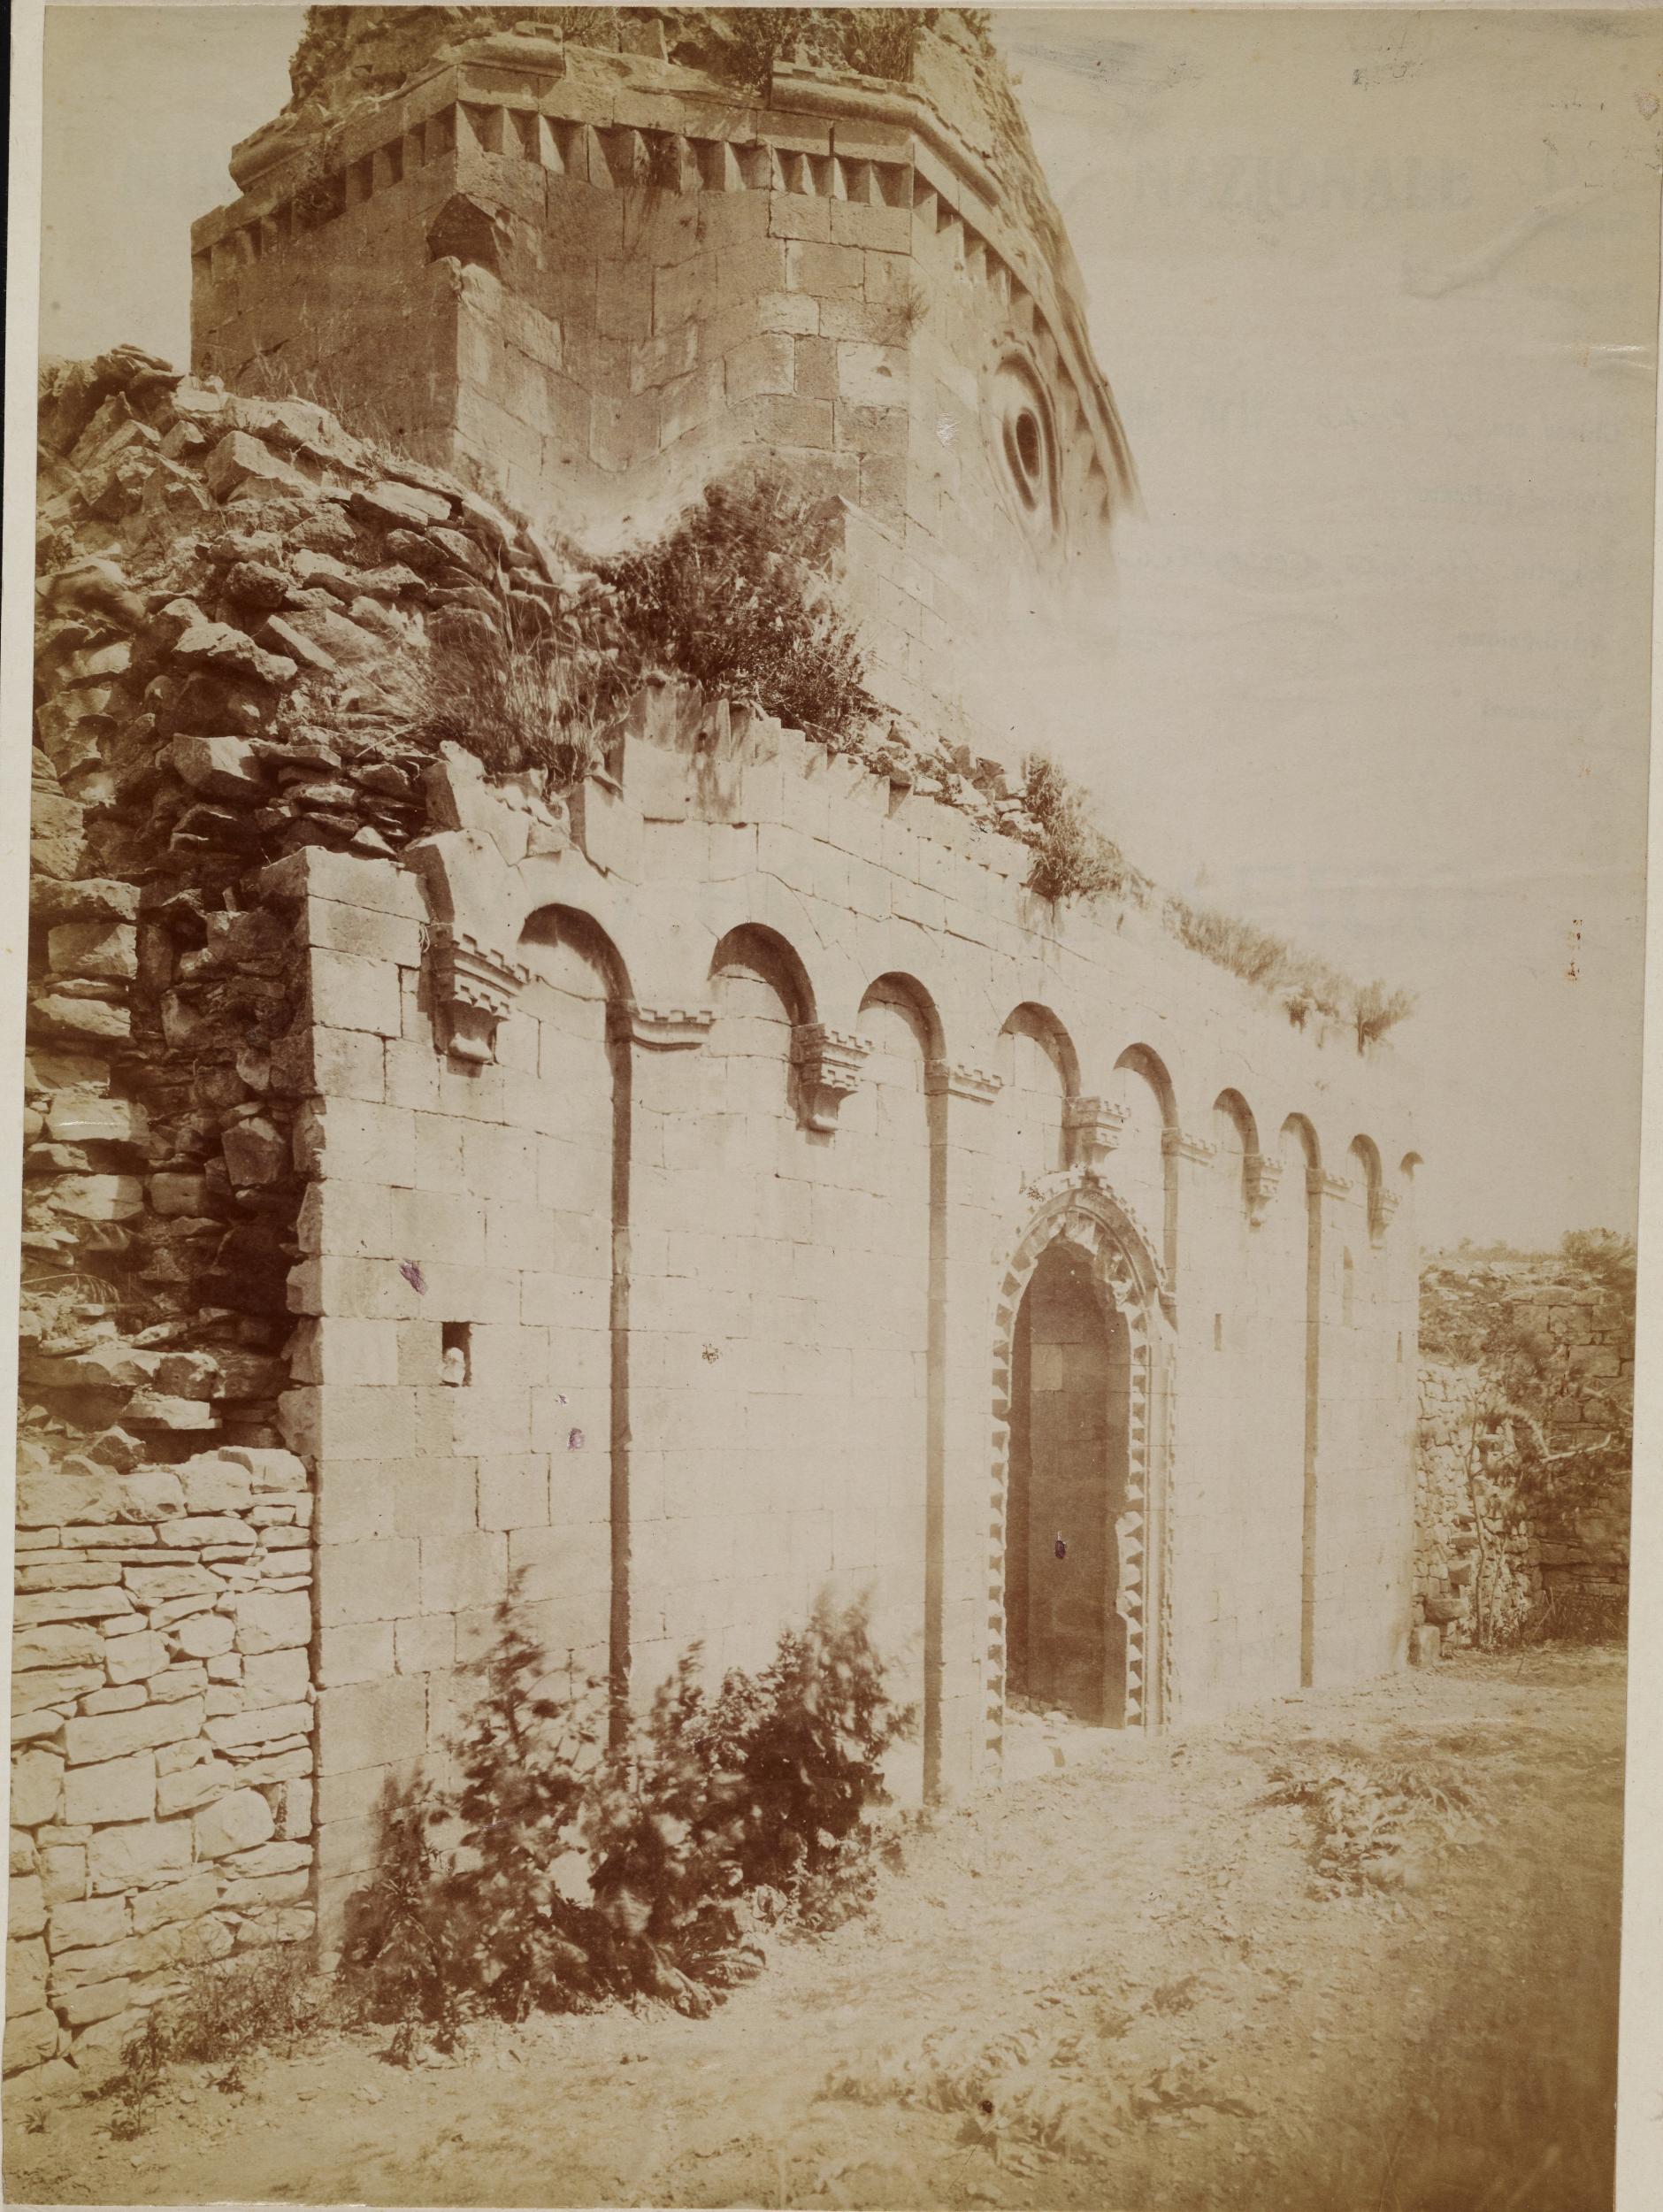 Fotografo non identificato, Modugno - Casale di Balsignano, Chiesa di S. Felice, facciata, cupola, ruderi, 1876-1900, albumina/carta, 32x23 cm, MPI311537